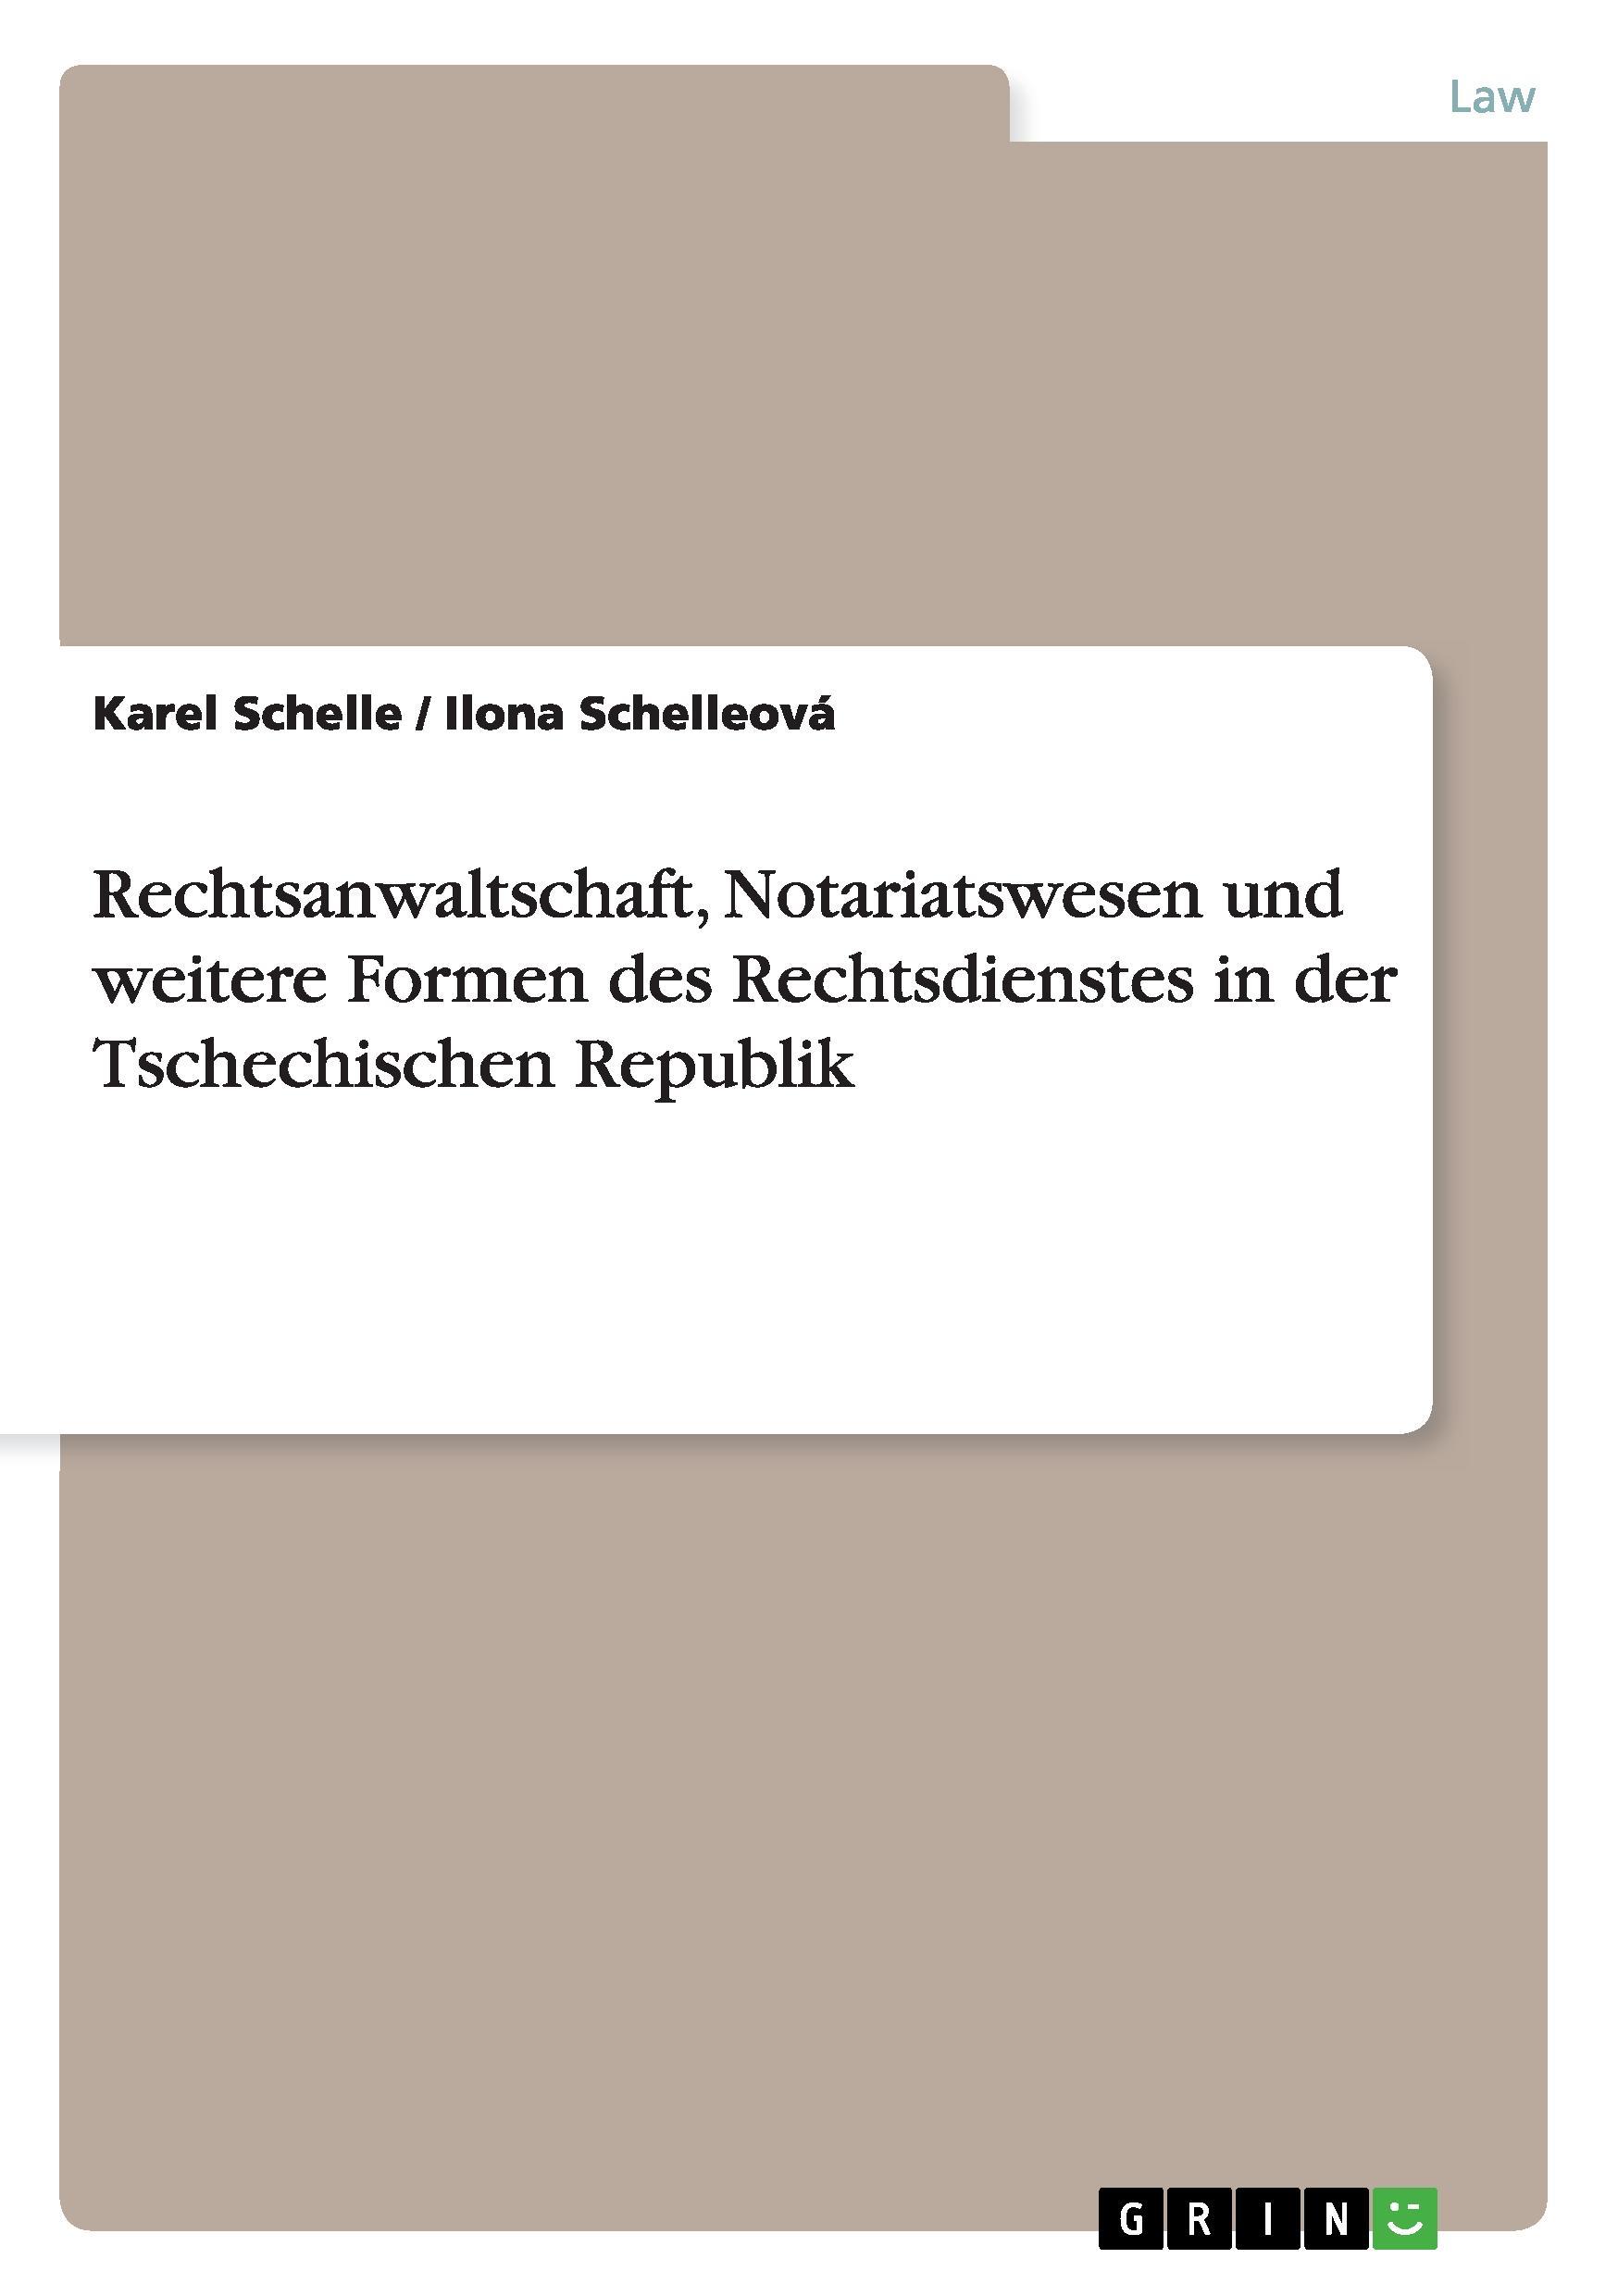 Rechtsanwaltschaft, Notariatswesen und weitere Formen des Rechtsdienstes in der Tschechischen Republik - Schelle, Karel Schelleová, Ilona